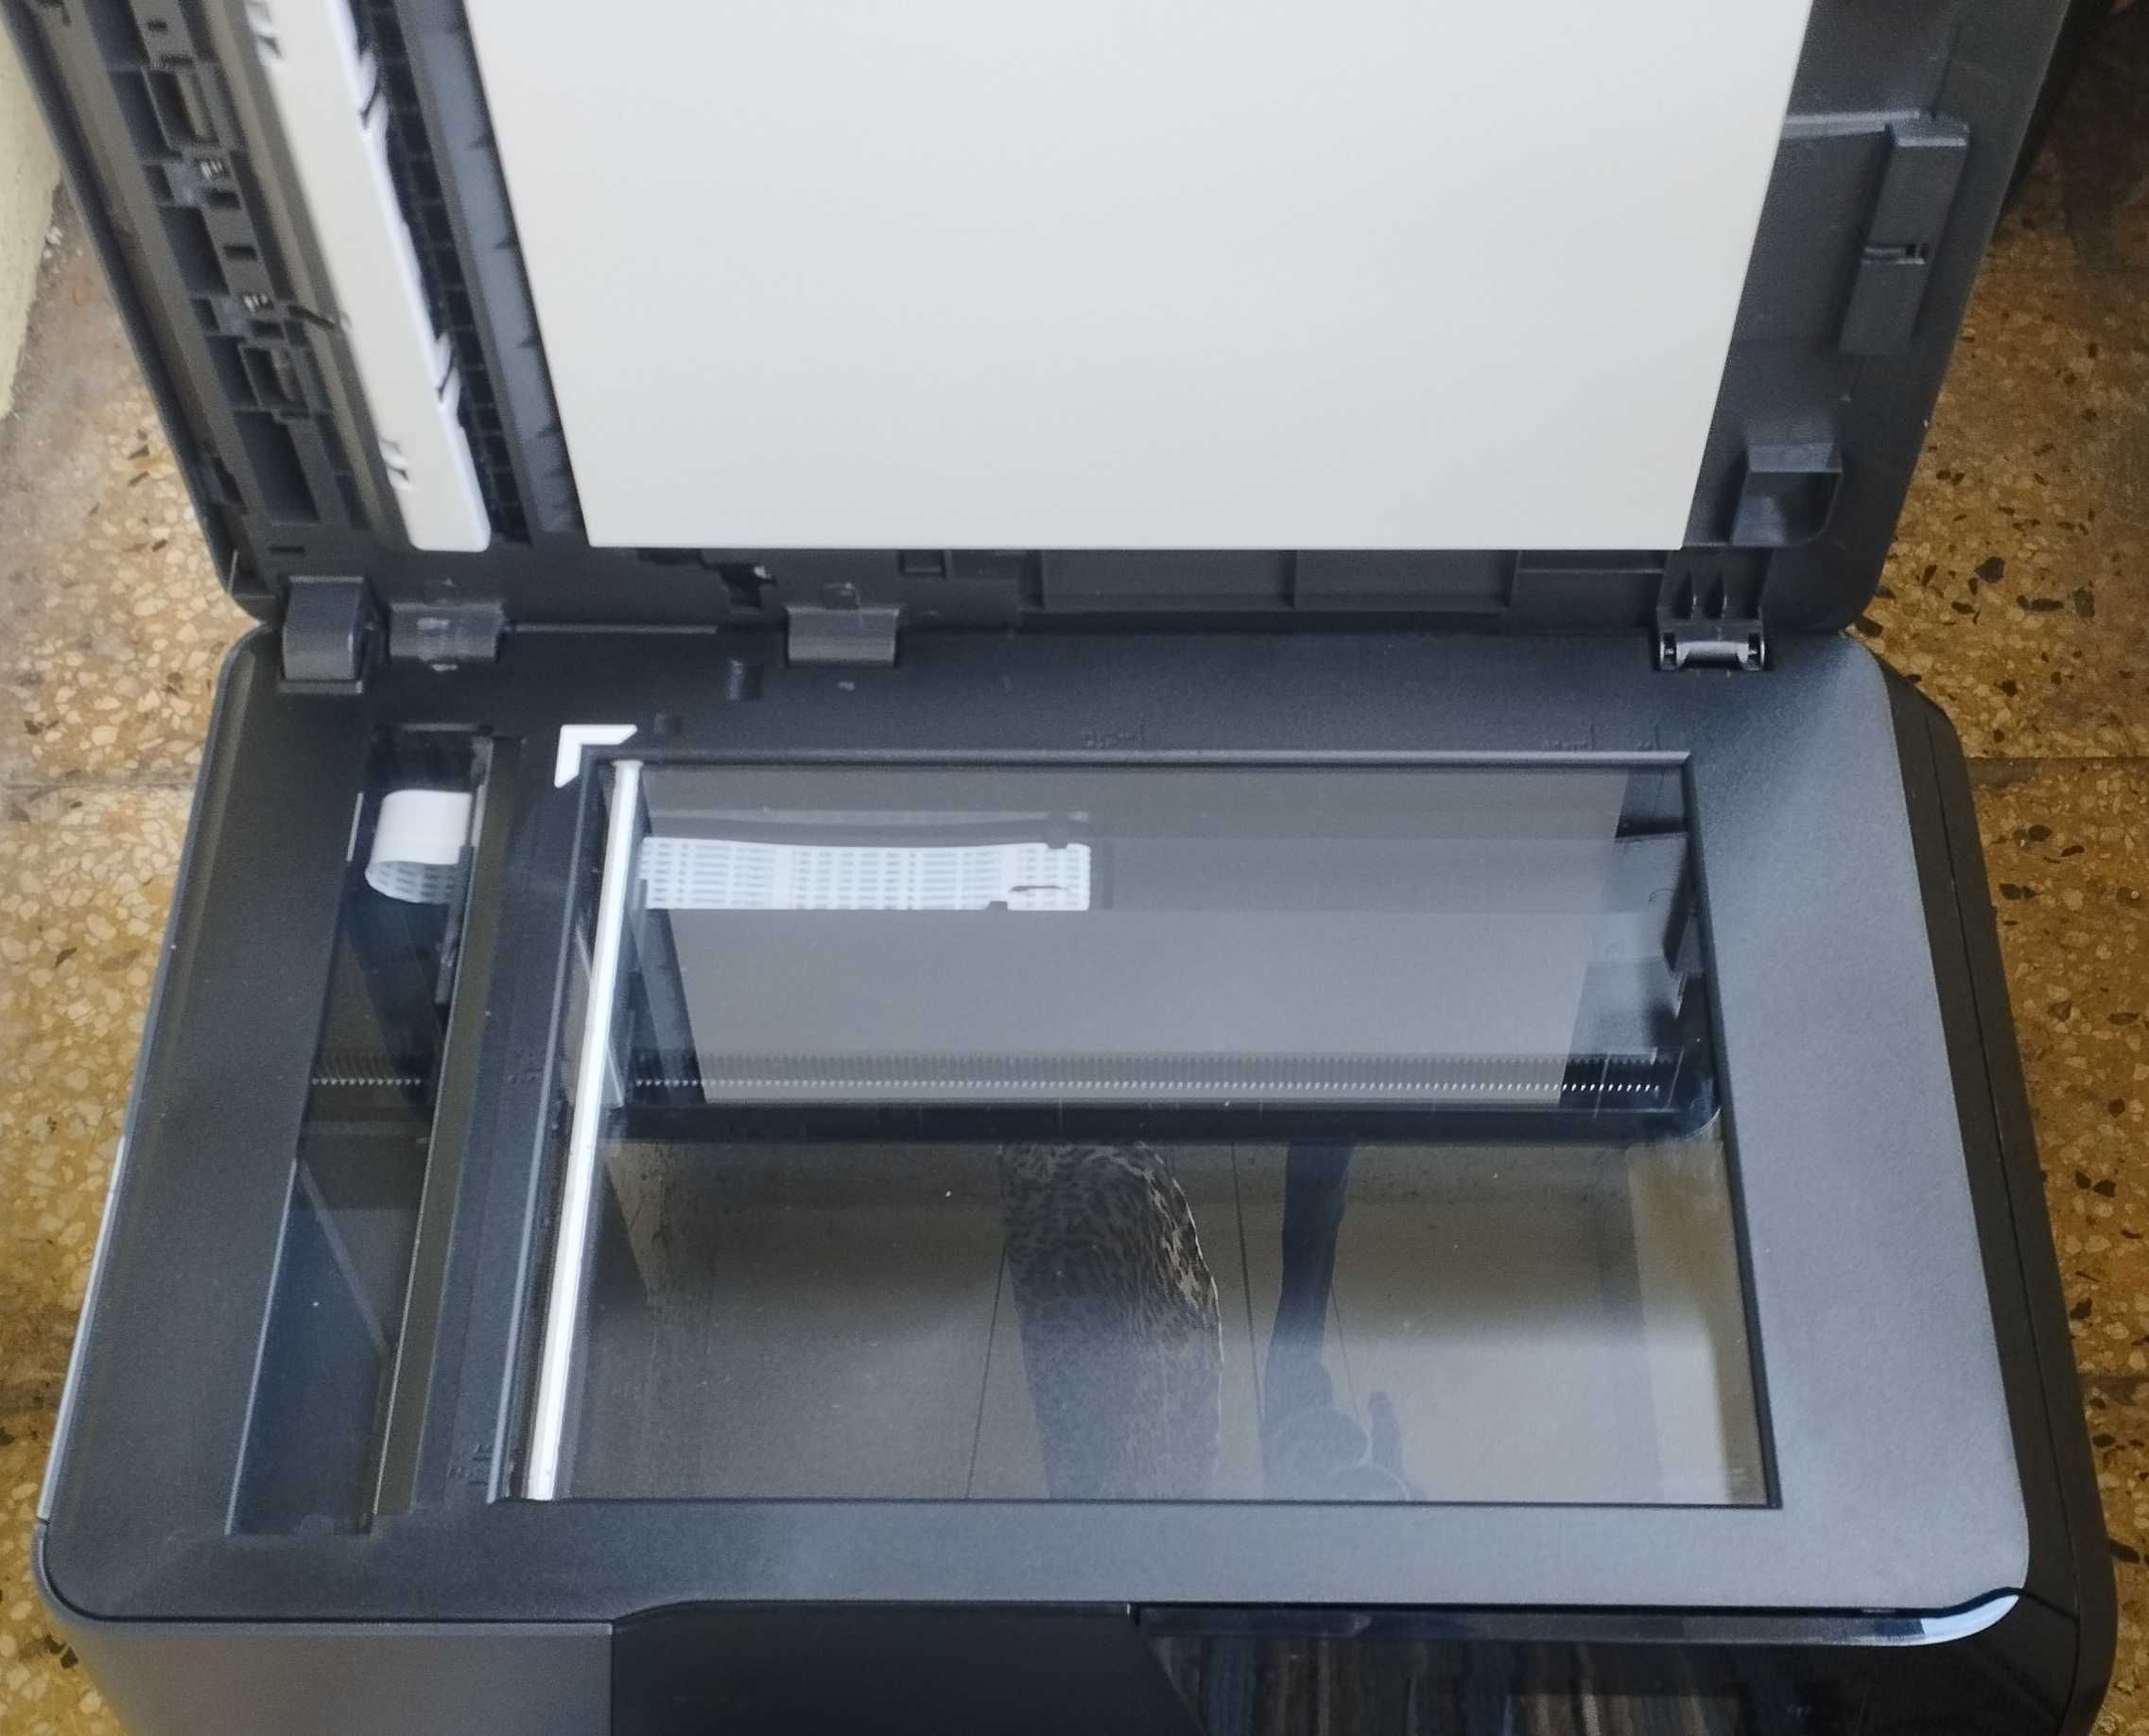 Принтер HP Officejet Pro 8715